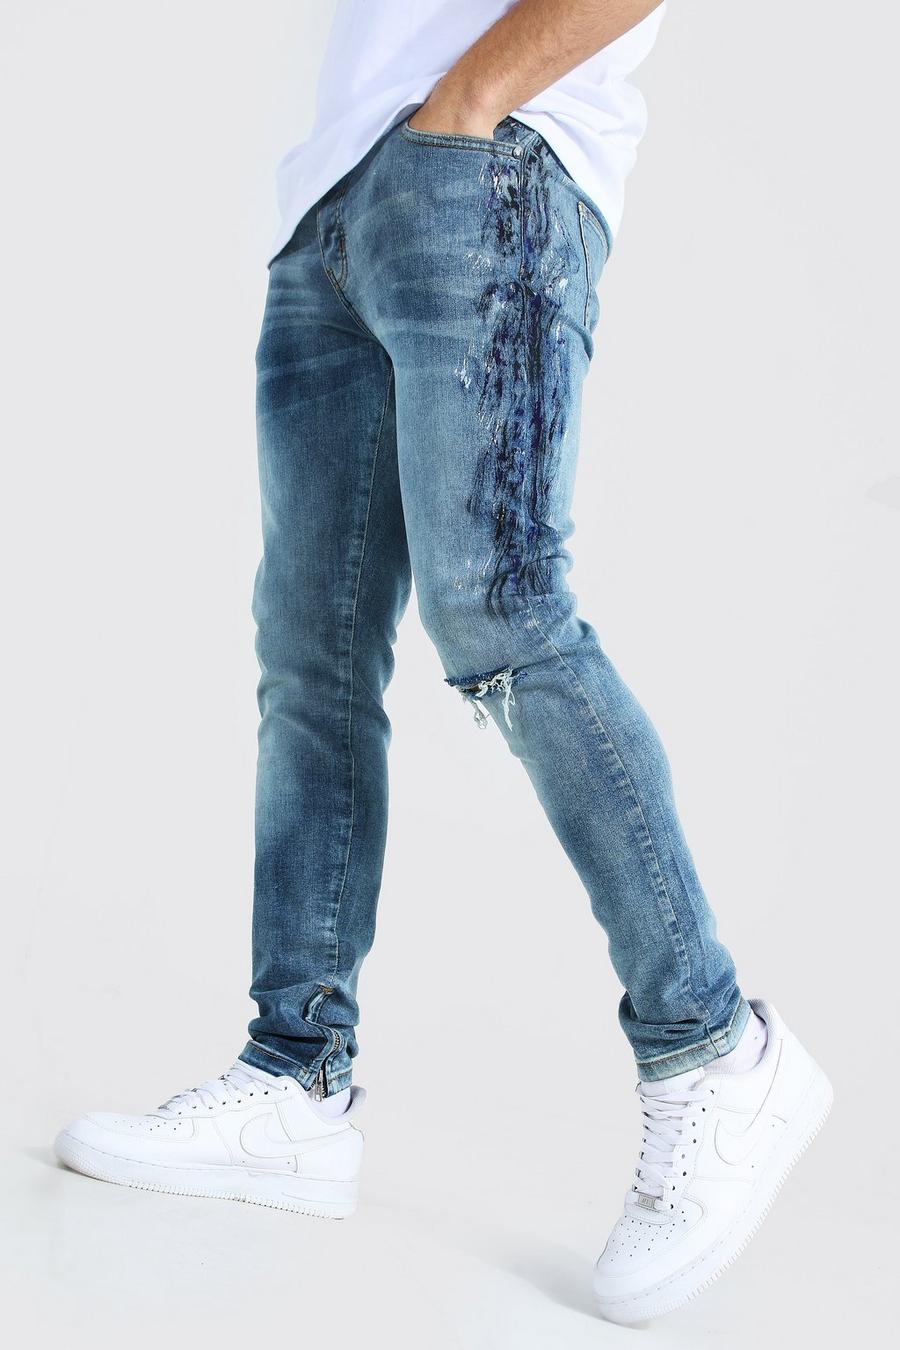 כחול ביניים azul סקיני ג'ינס נמתח עם עיטורי צבע